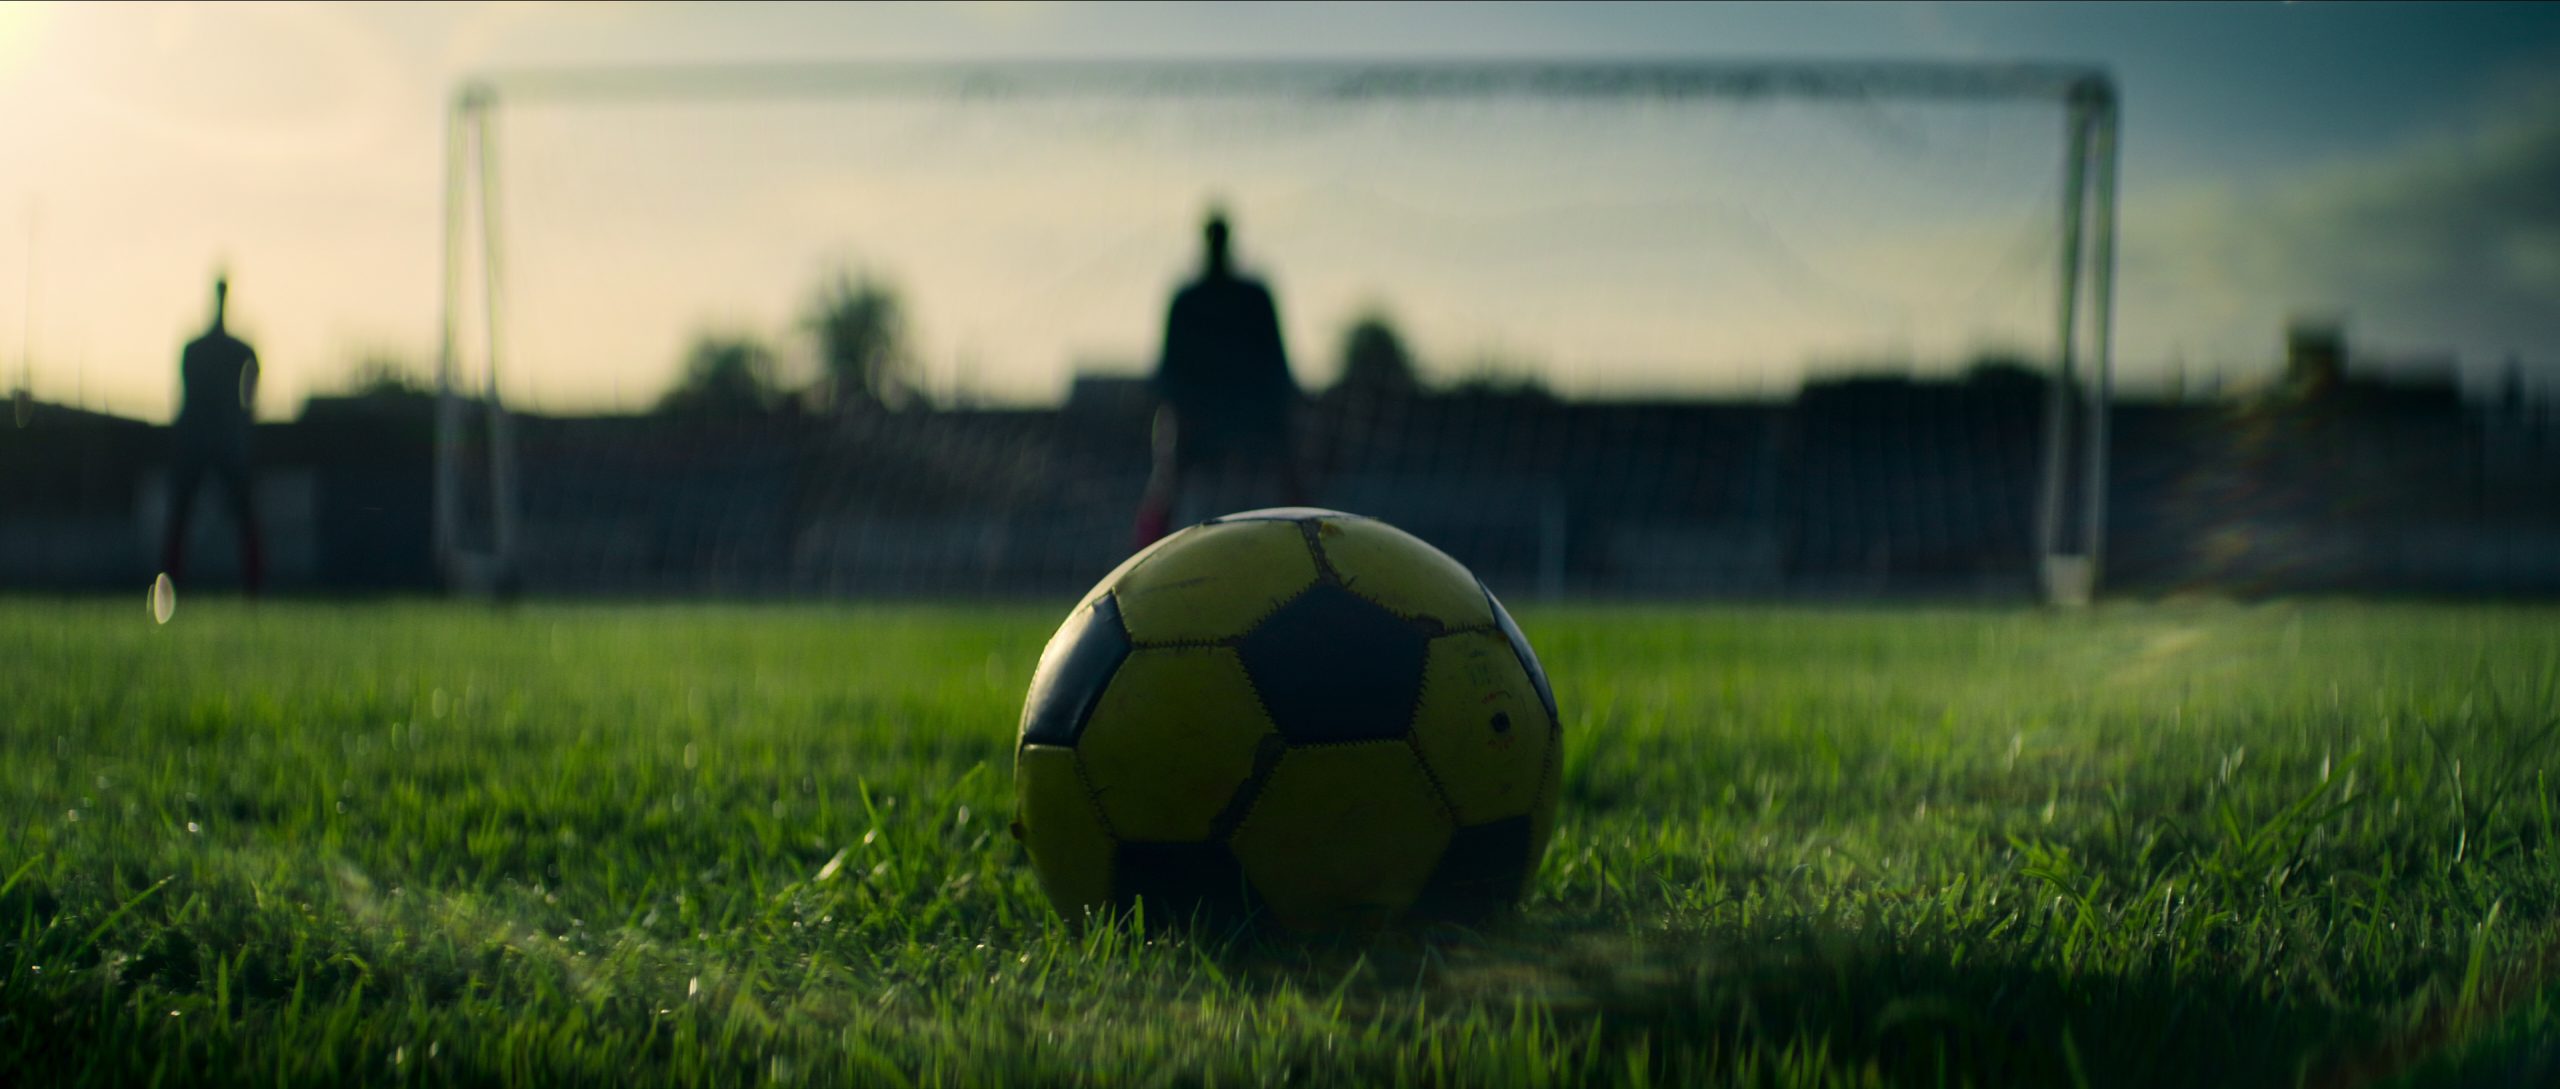 O Ninho: Futebol & Tragédia